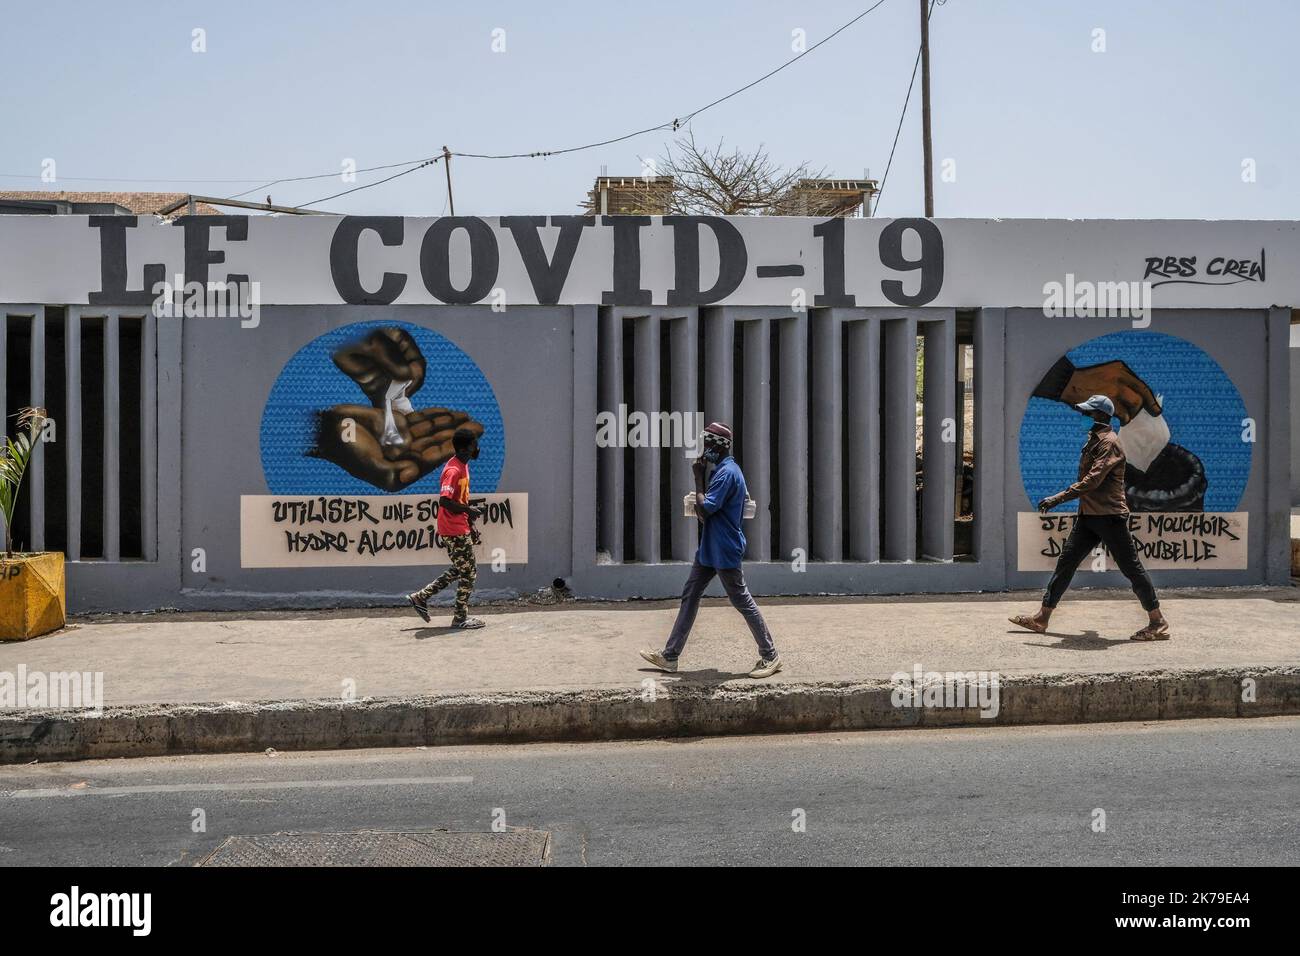 Senegal / Dakar / Dakar - i giovani passano davanti ai graffiti dipinti presso l'Università di Dakar per sensibilizzare sulle misure igieniche per combattere il Covid-19. Foto Stock